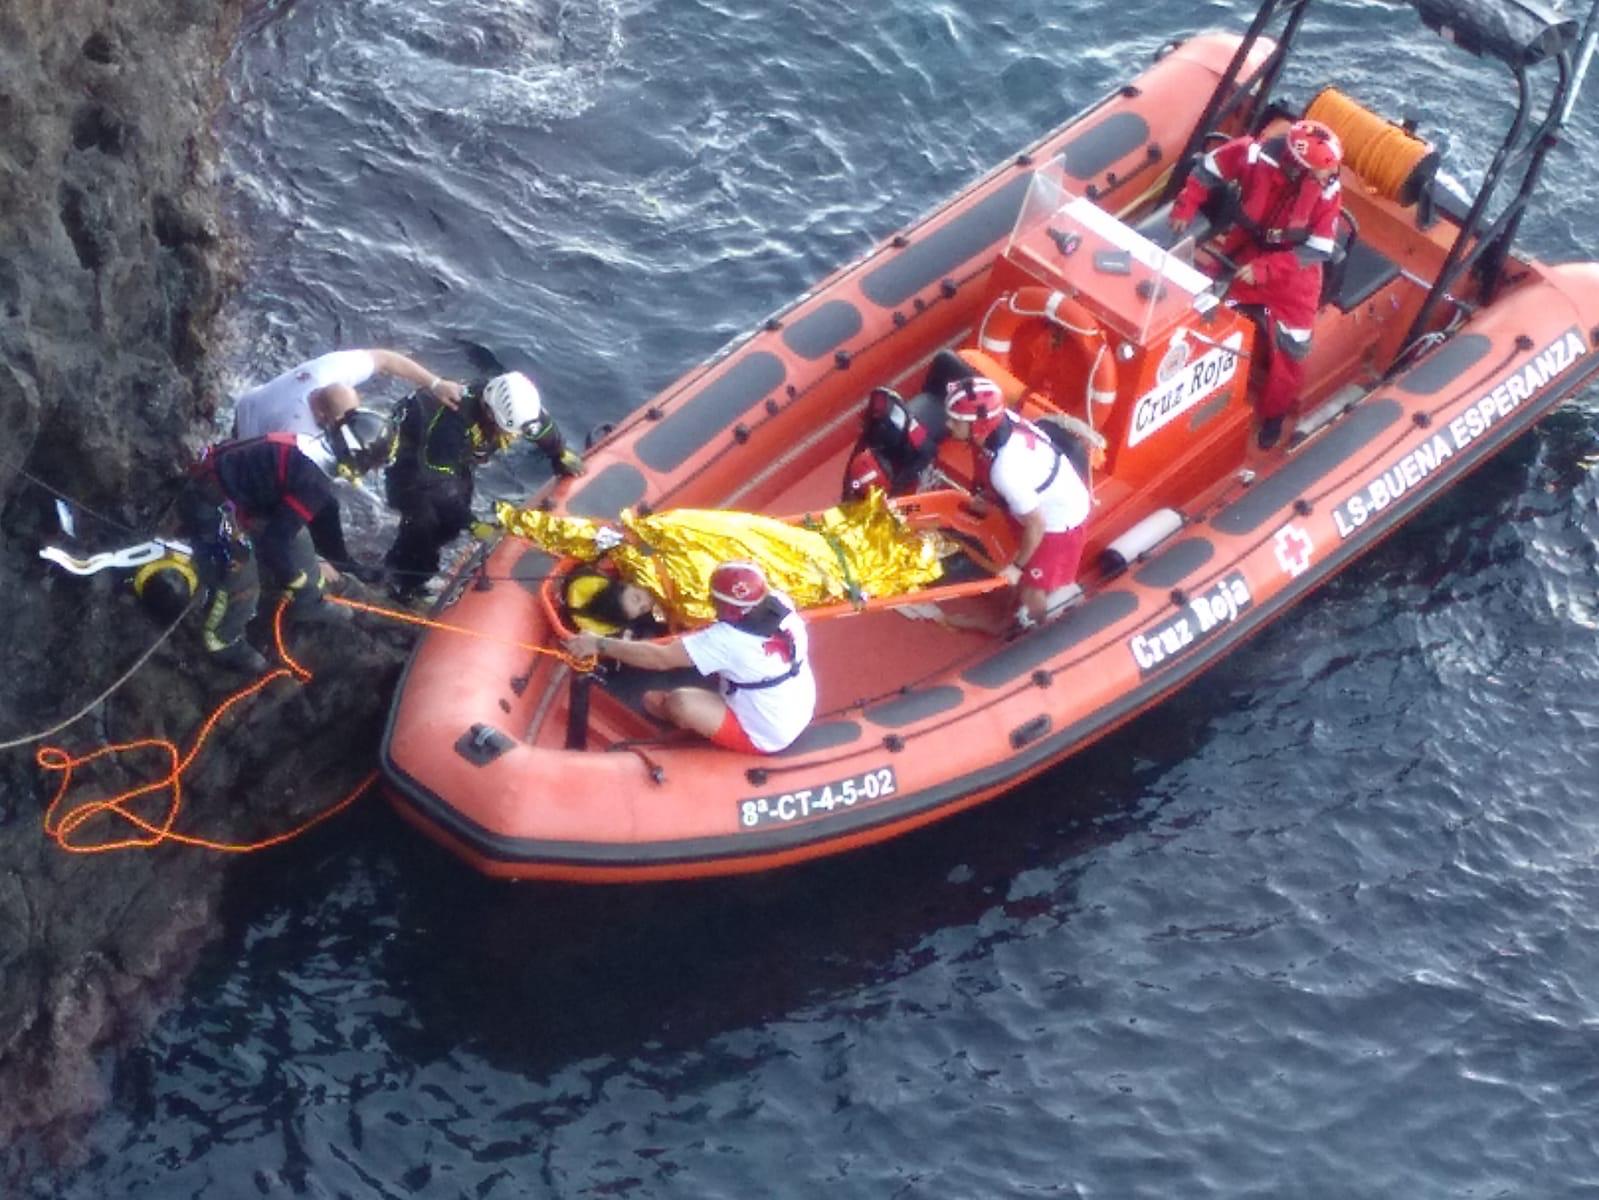 Rescatada a una persona que cayó al mar en Cabo de Palos